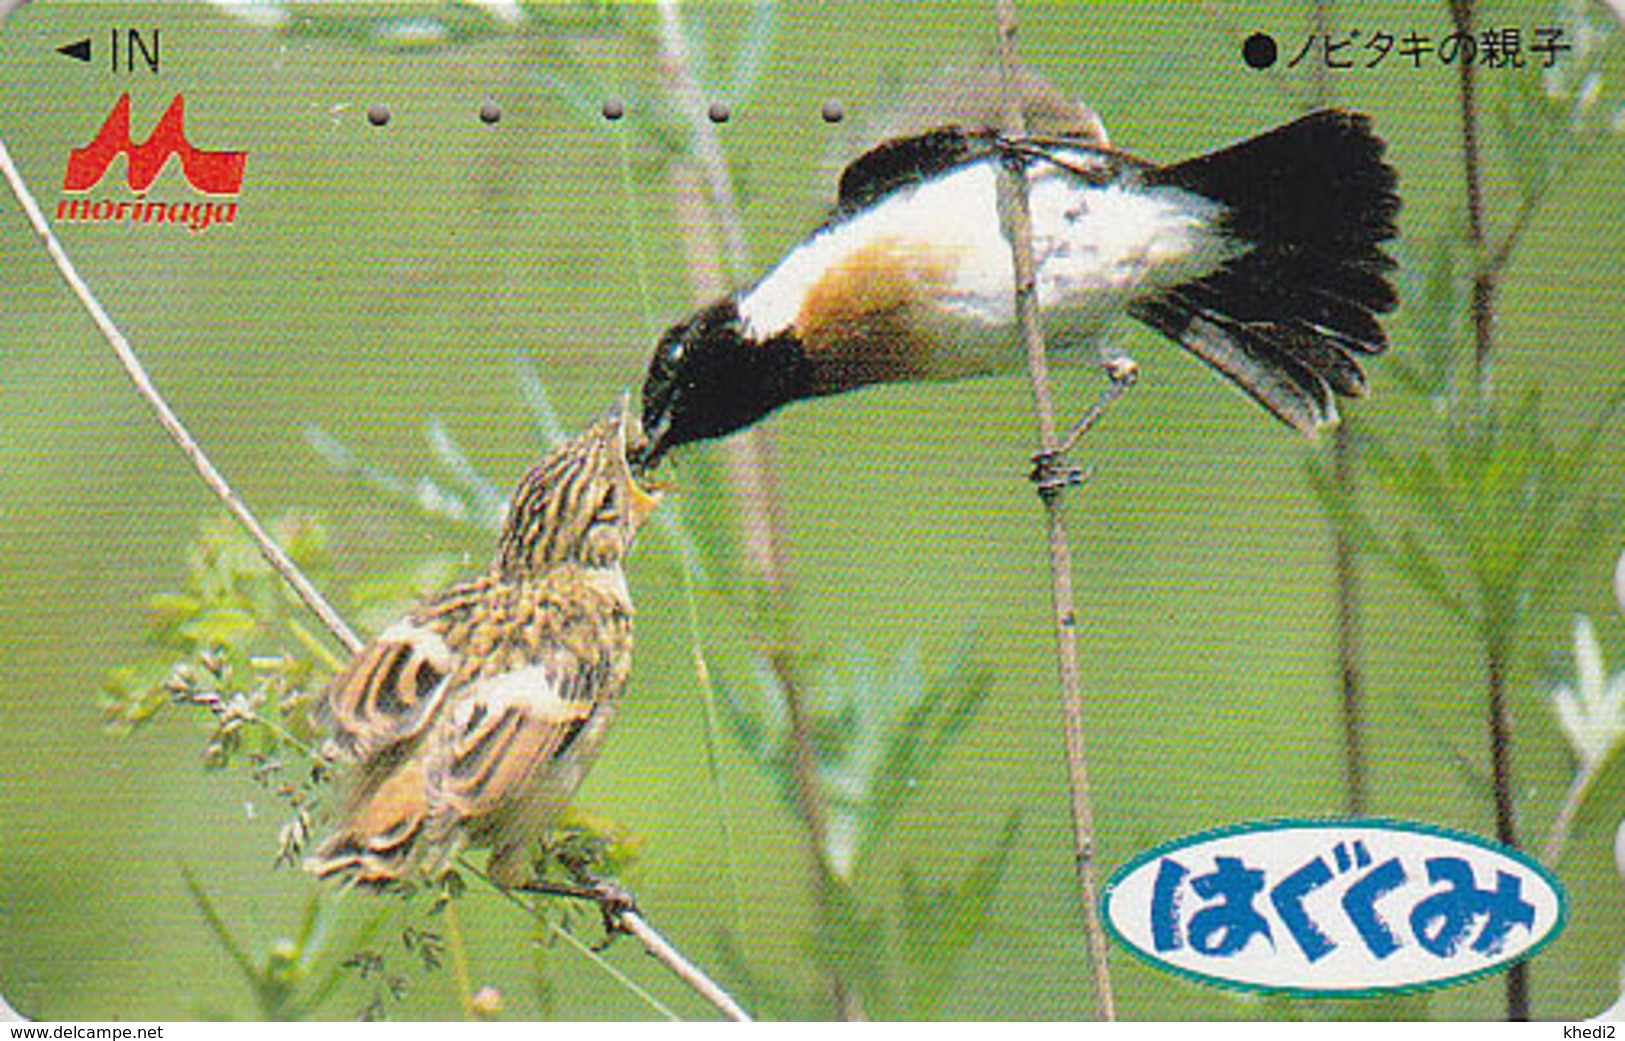 Télécarte Japon / 110-011 - Animal - OISEAU Au Nid - SONG BIRD Feeding Japan Phonecard - BE 4425 - Passereaux